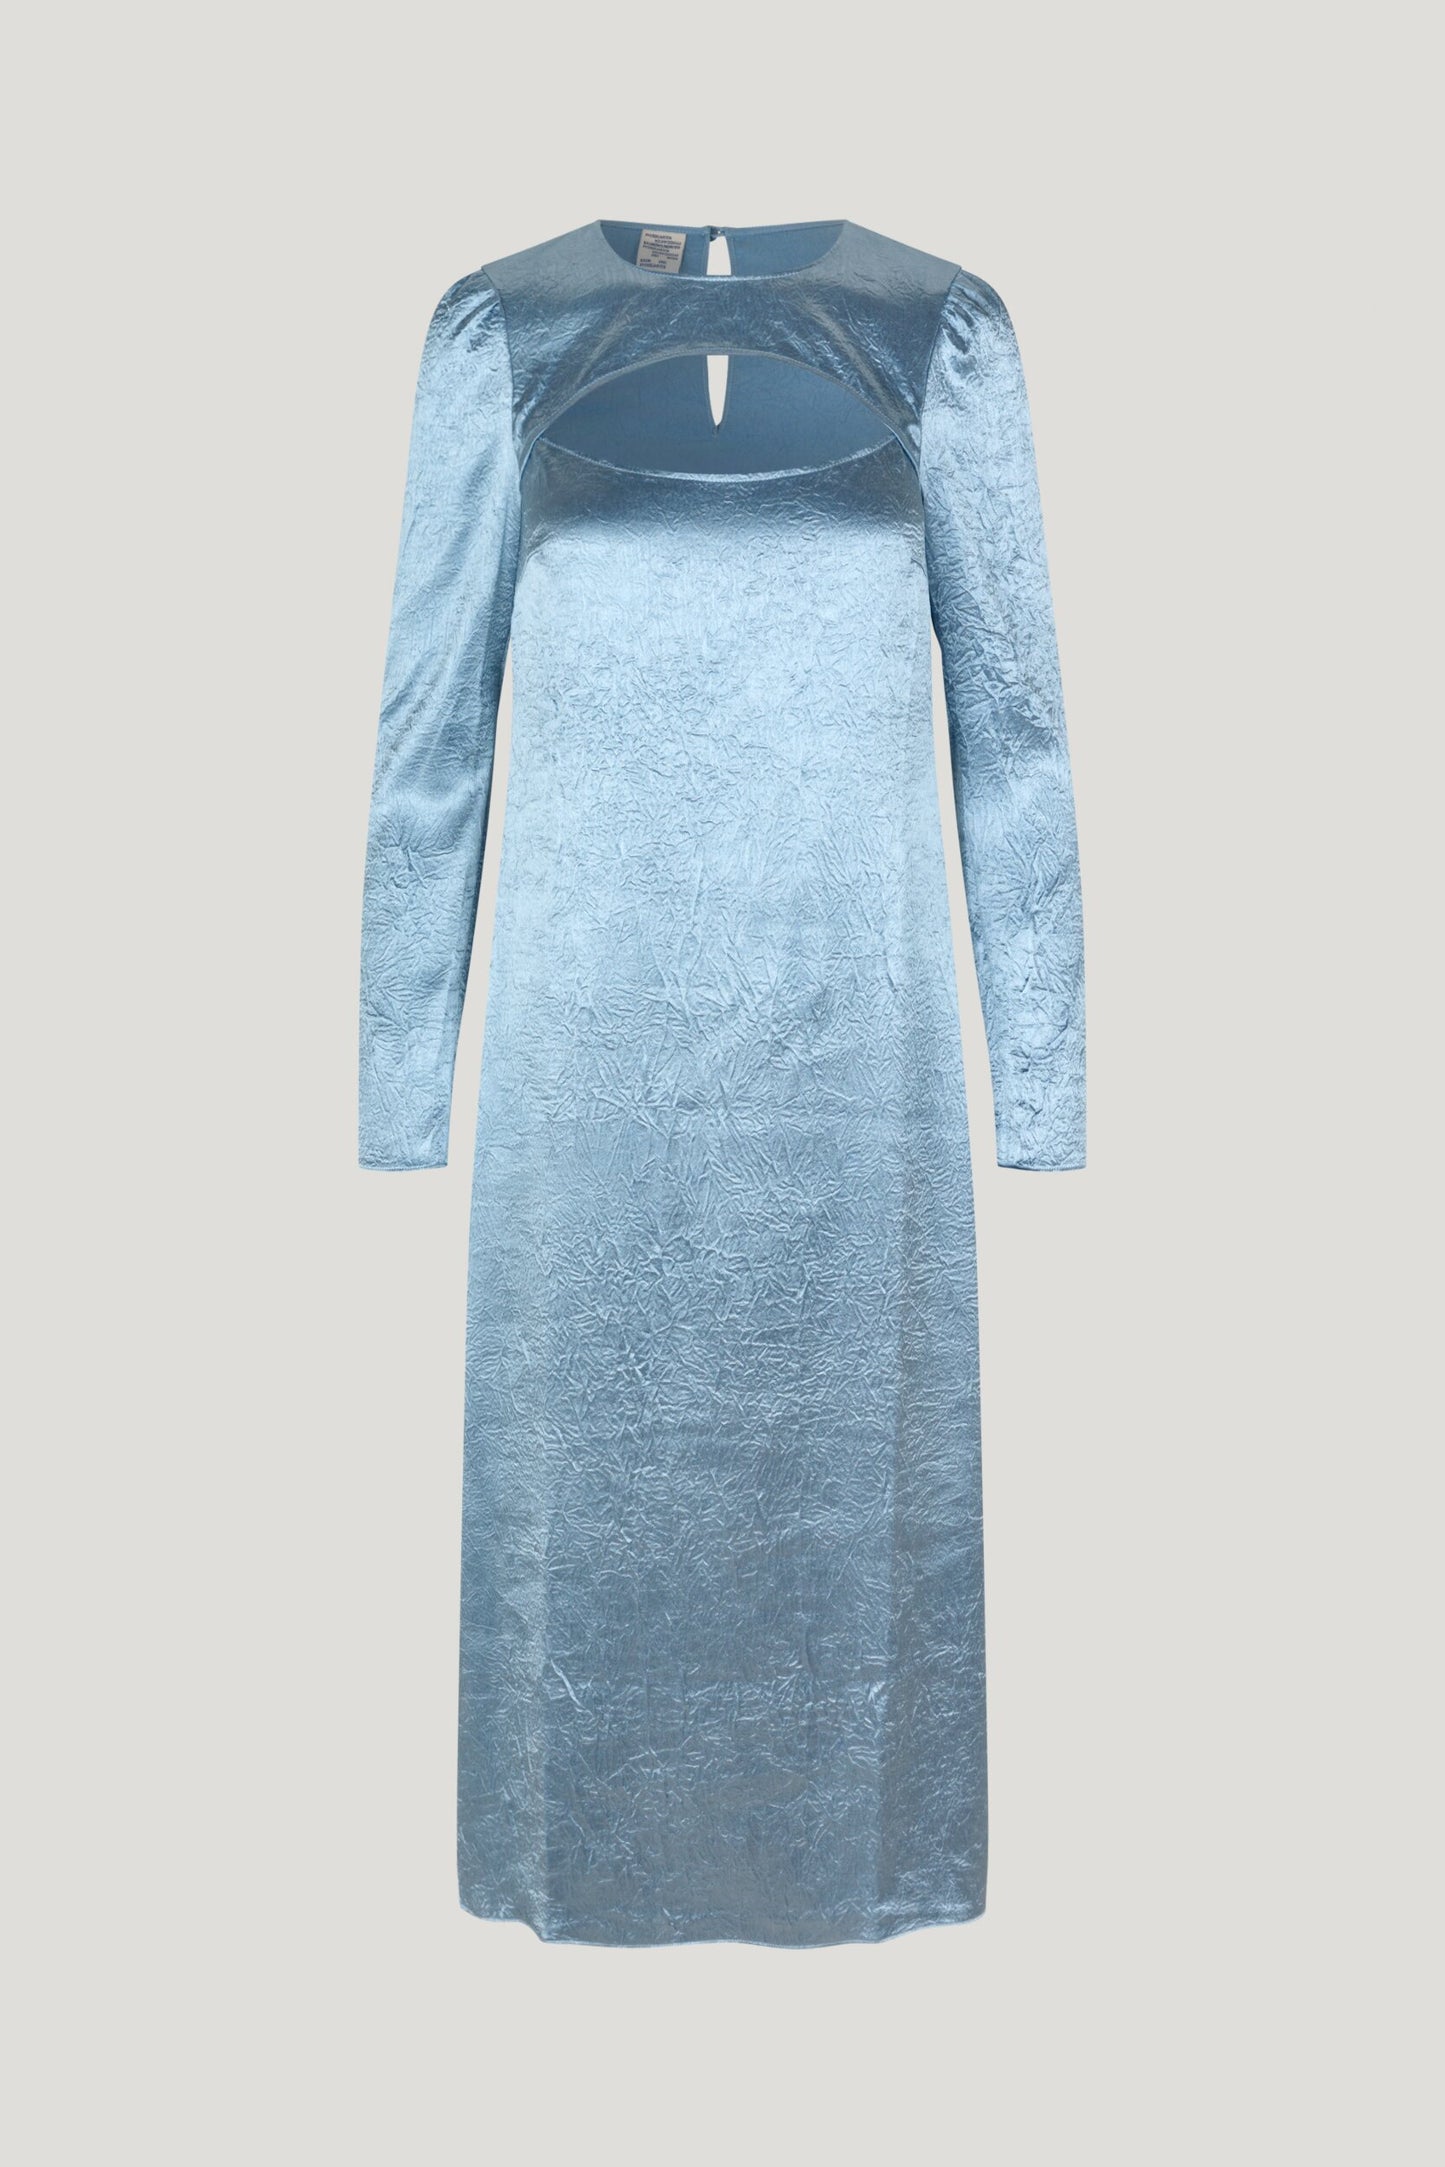 Aneto Dress - Blue Fog by Baum und Pferdgarten